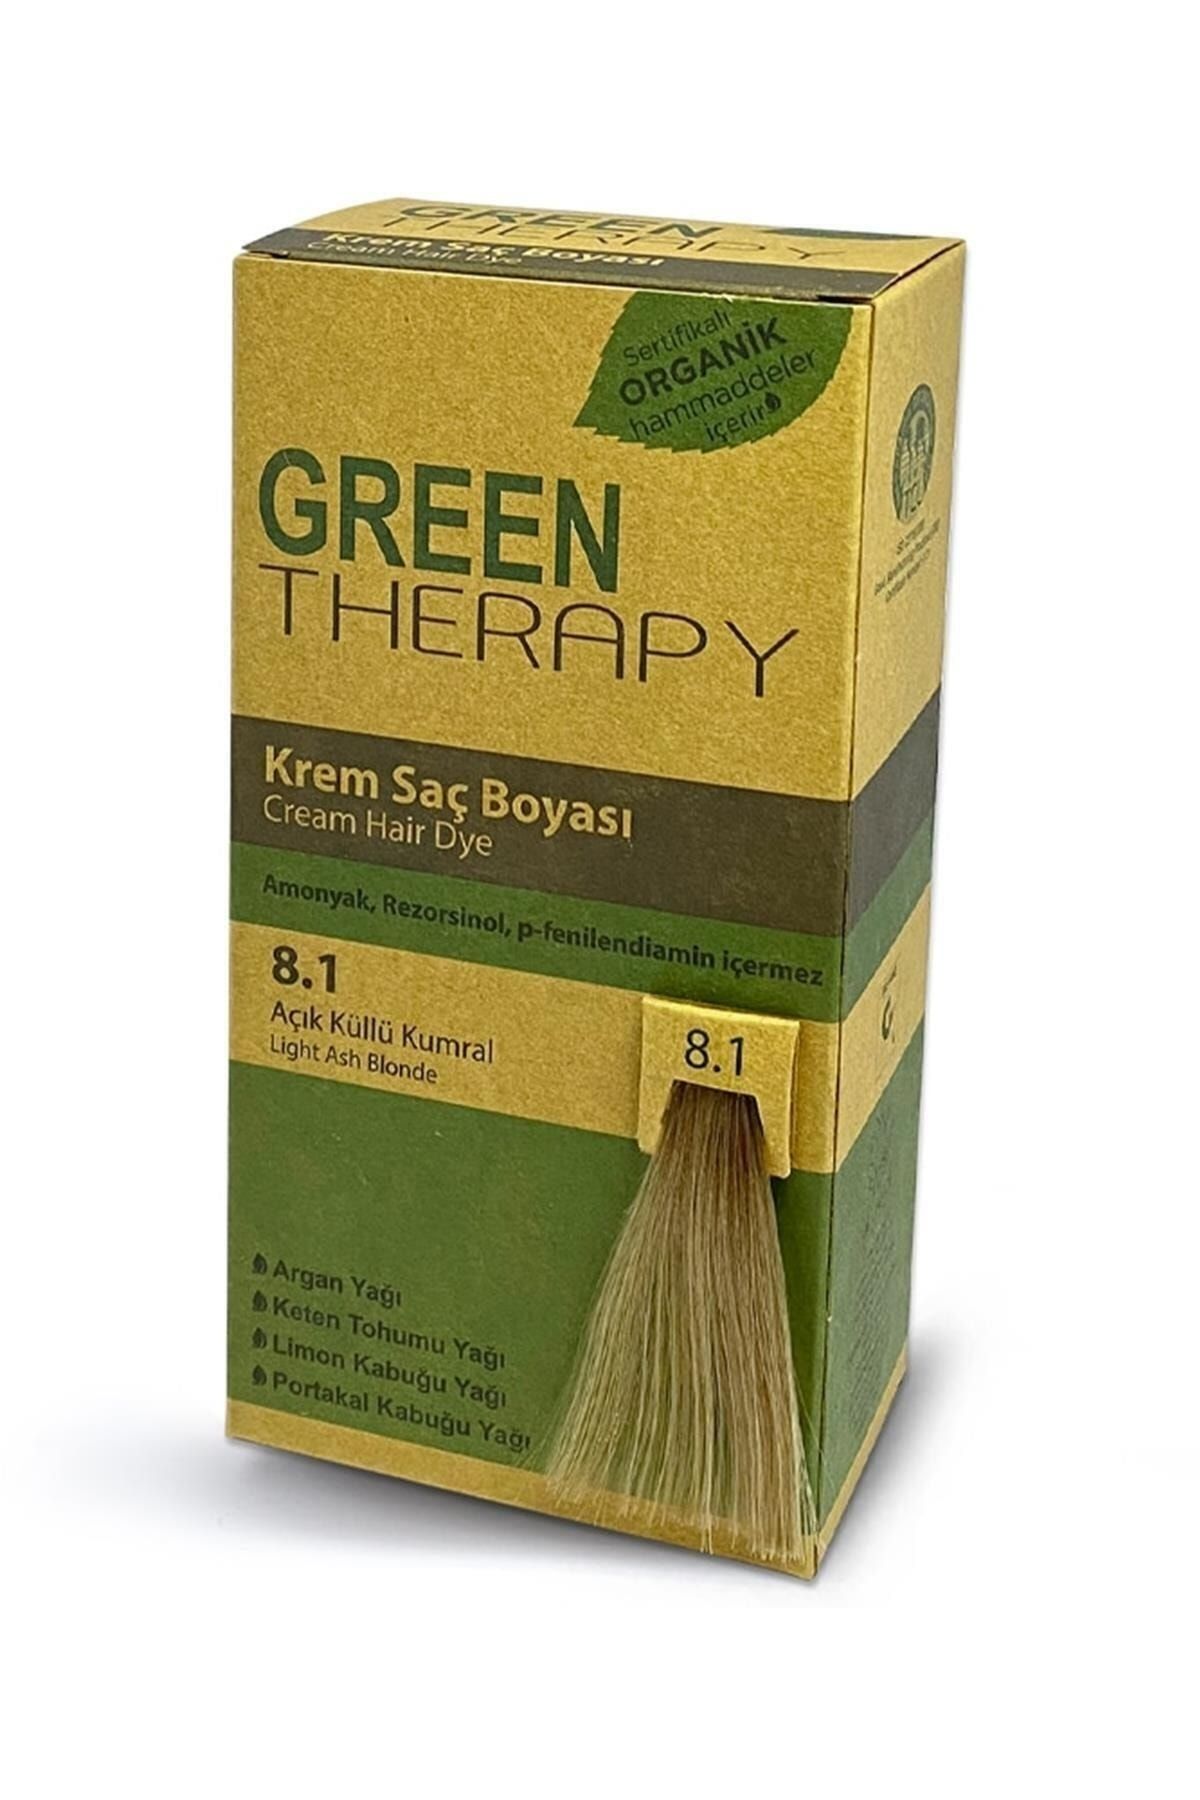 Green Therapy Krem Saç Boyası Argan Yağlı 8.1 Açık Küllü Kumral ,,natural1113